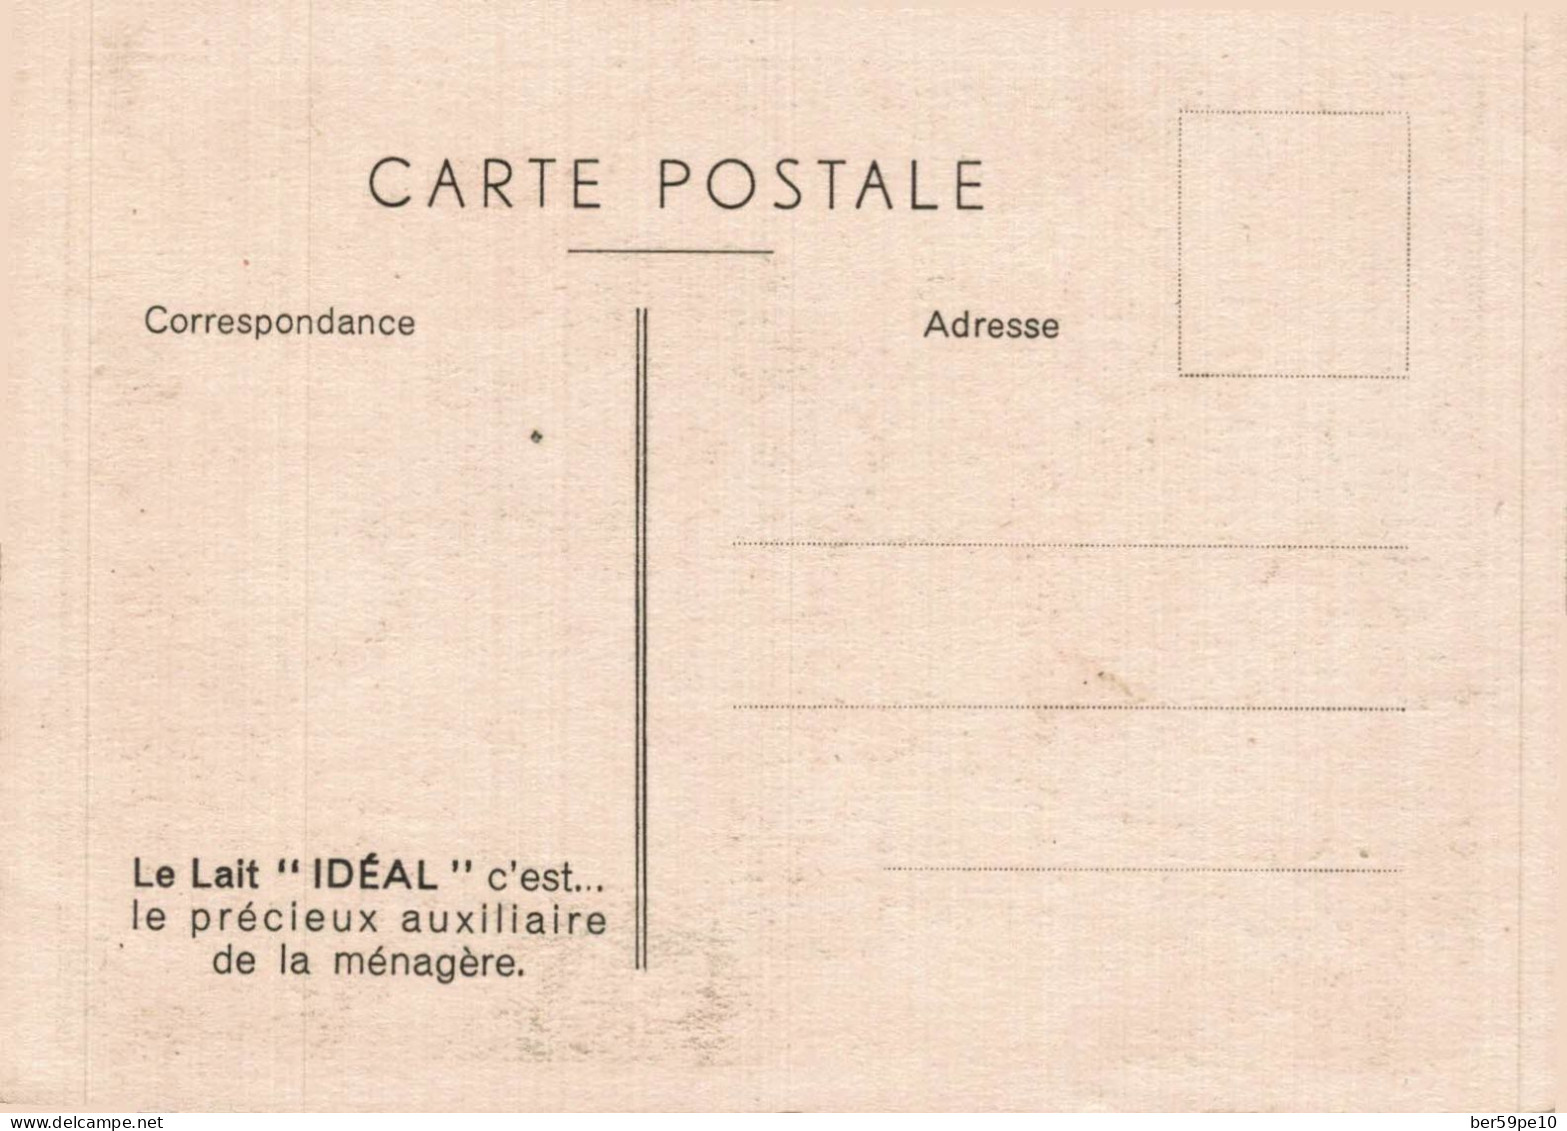 PUBLICITE LAIT IDEAL NESTLE LE VILAIN GOURMAND - Werbepostkarten